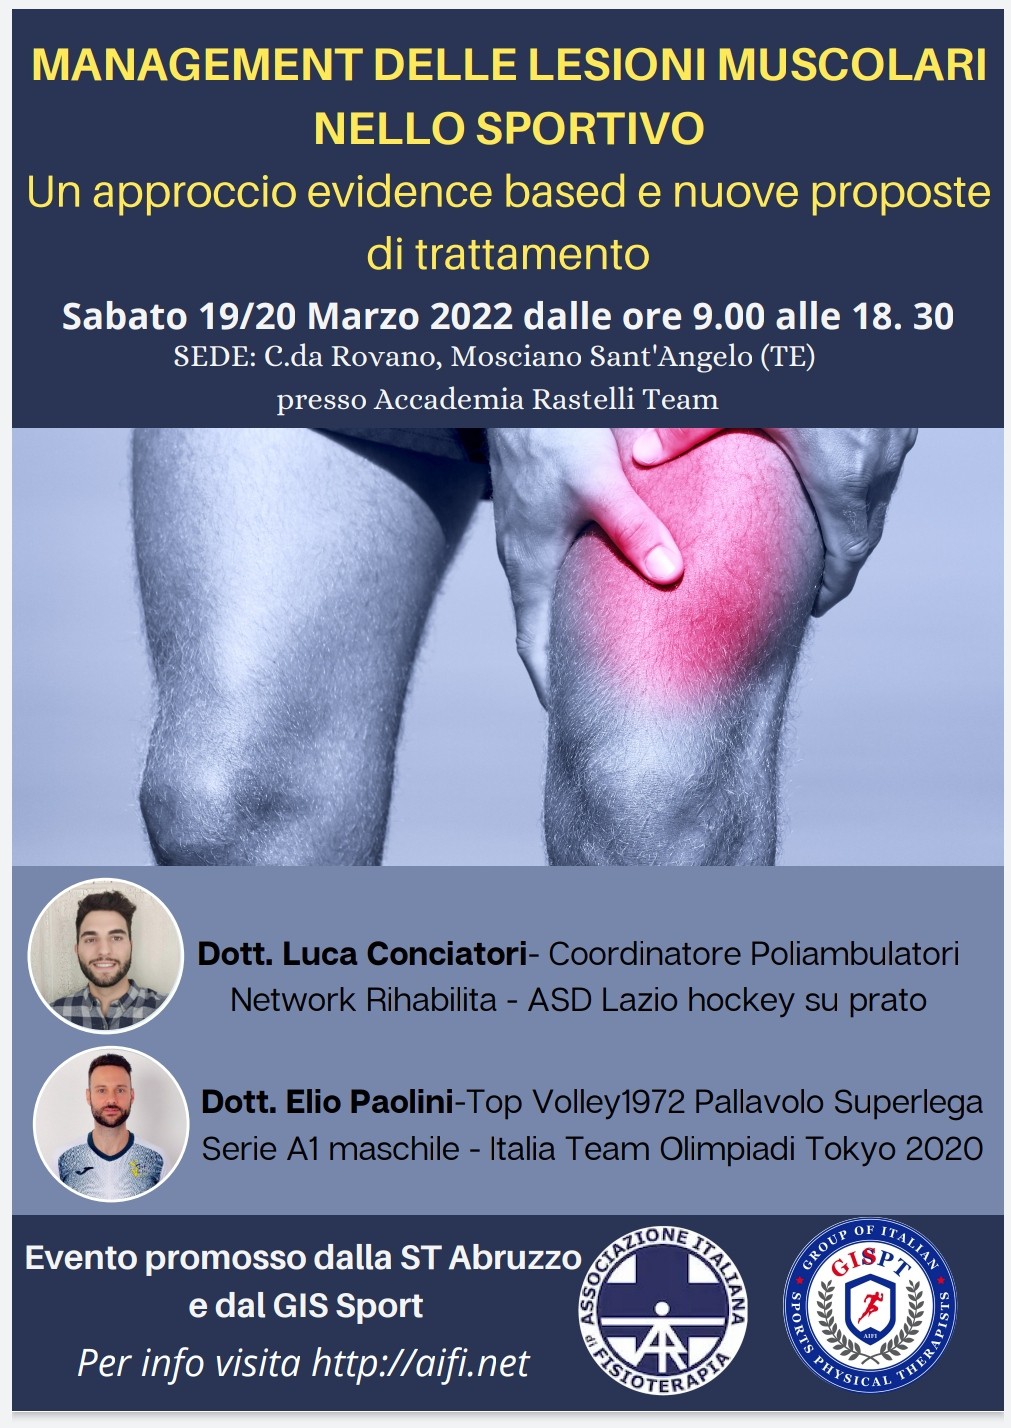 Corso “Management delle lesioni muscolari nello sportivo” in collaborazione con AIFI Abruzzo